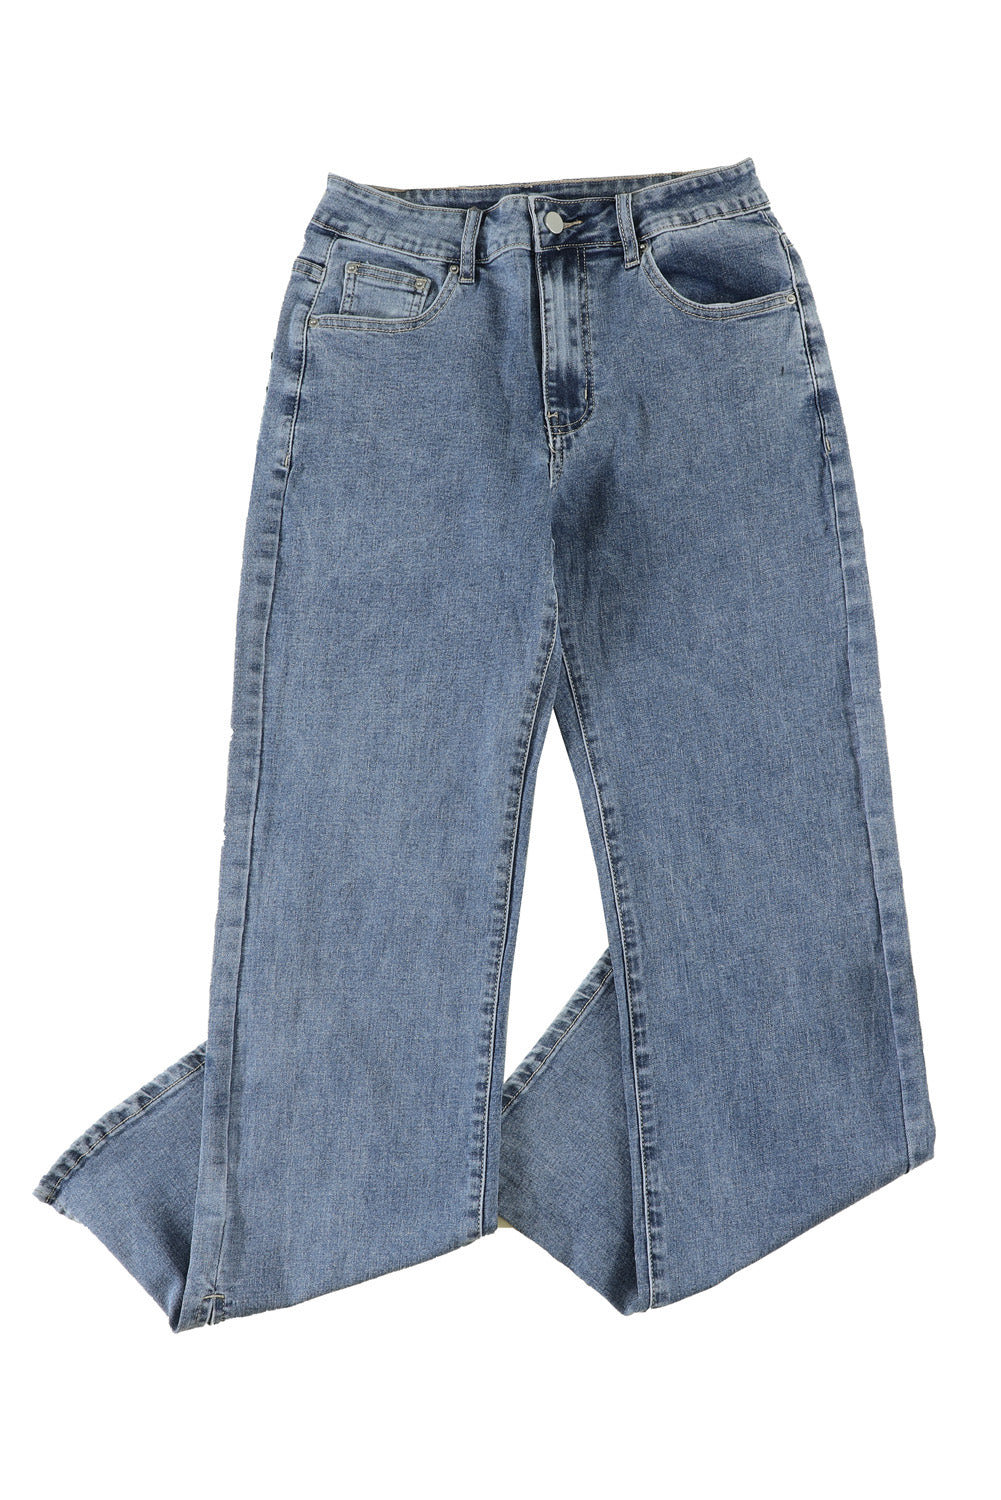 Blue High Rise Slit Anklet Flare Jeans Jeans JT's Designer Fashion